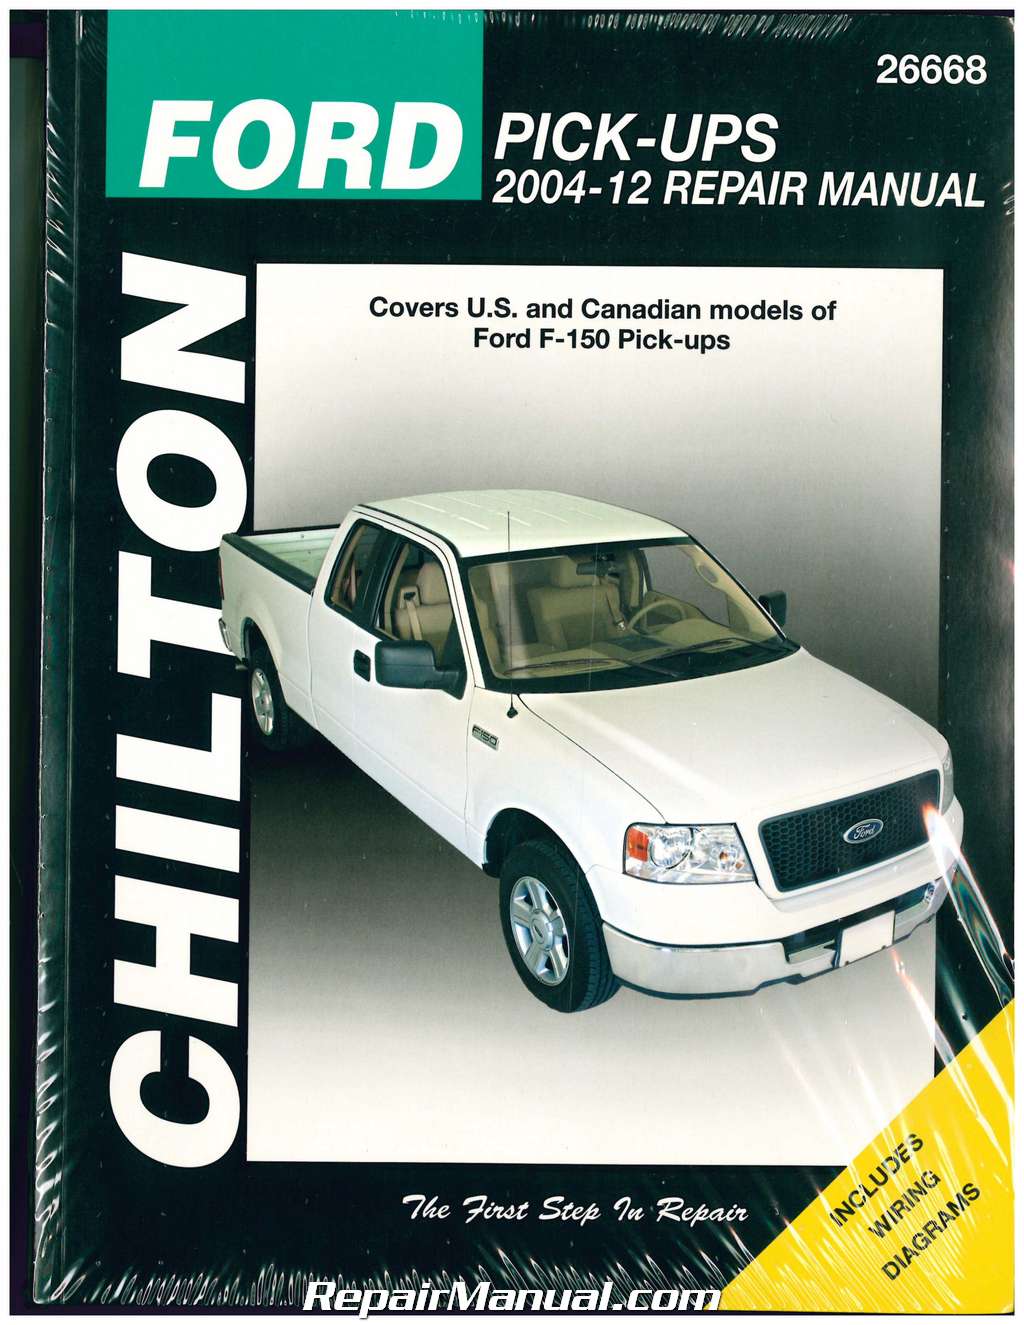 Ford F-Series Repair Manual